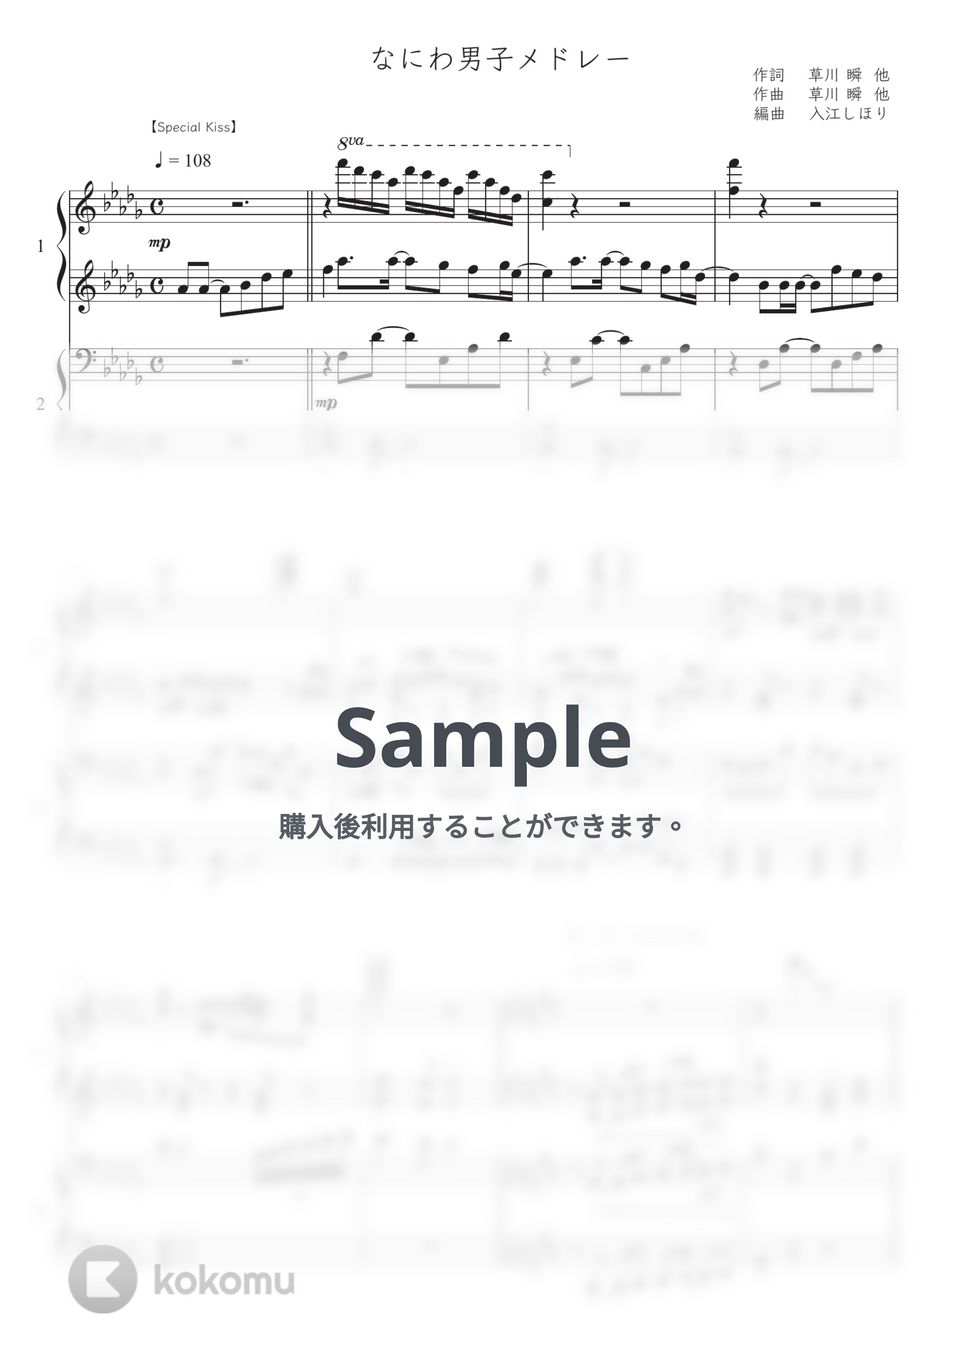 なにわ男子 - なにわ男子メドレー (ピアノ連弾) by 入江しほり